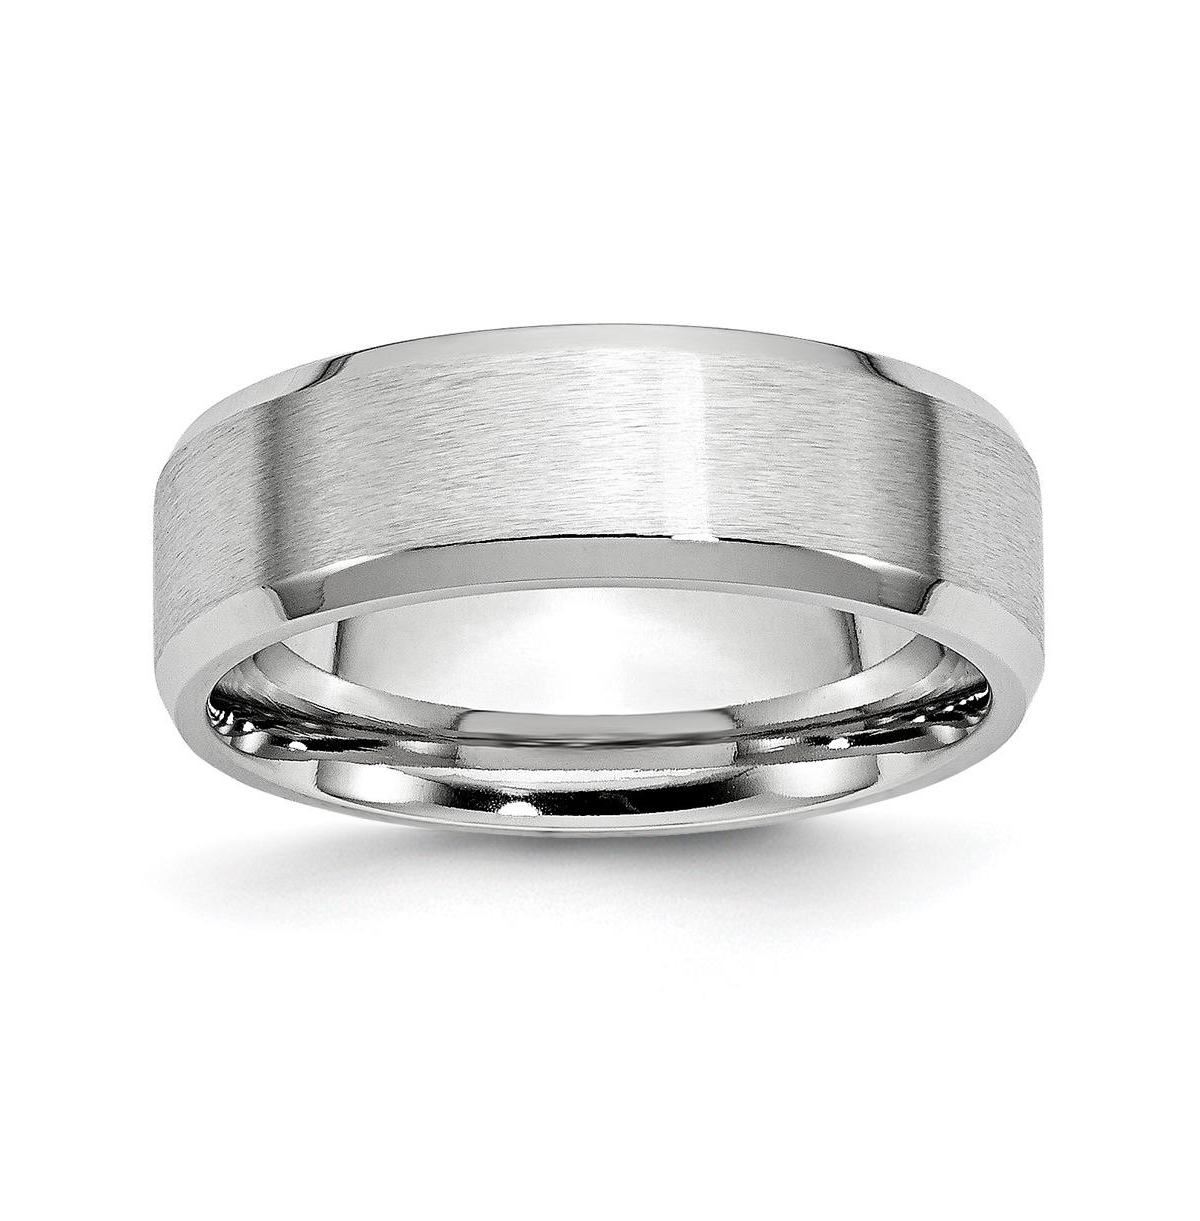 Cobalt Satin and Polished Beveled Edge Wedding Band Ring - White